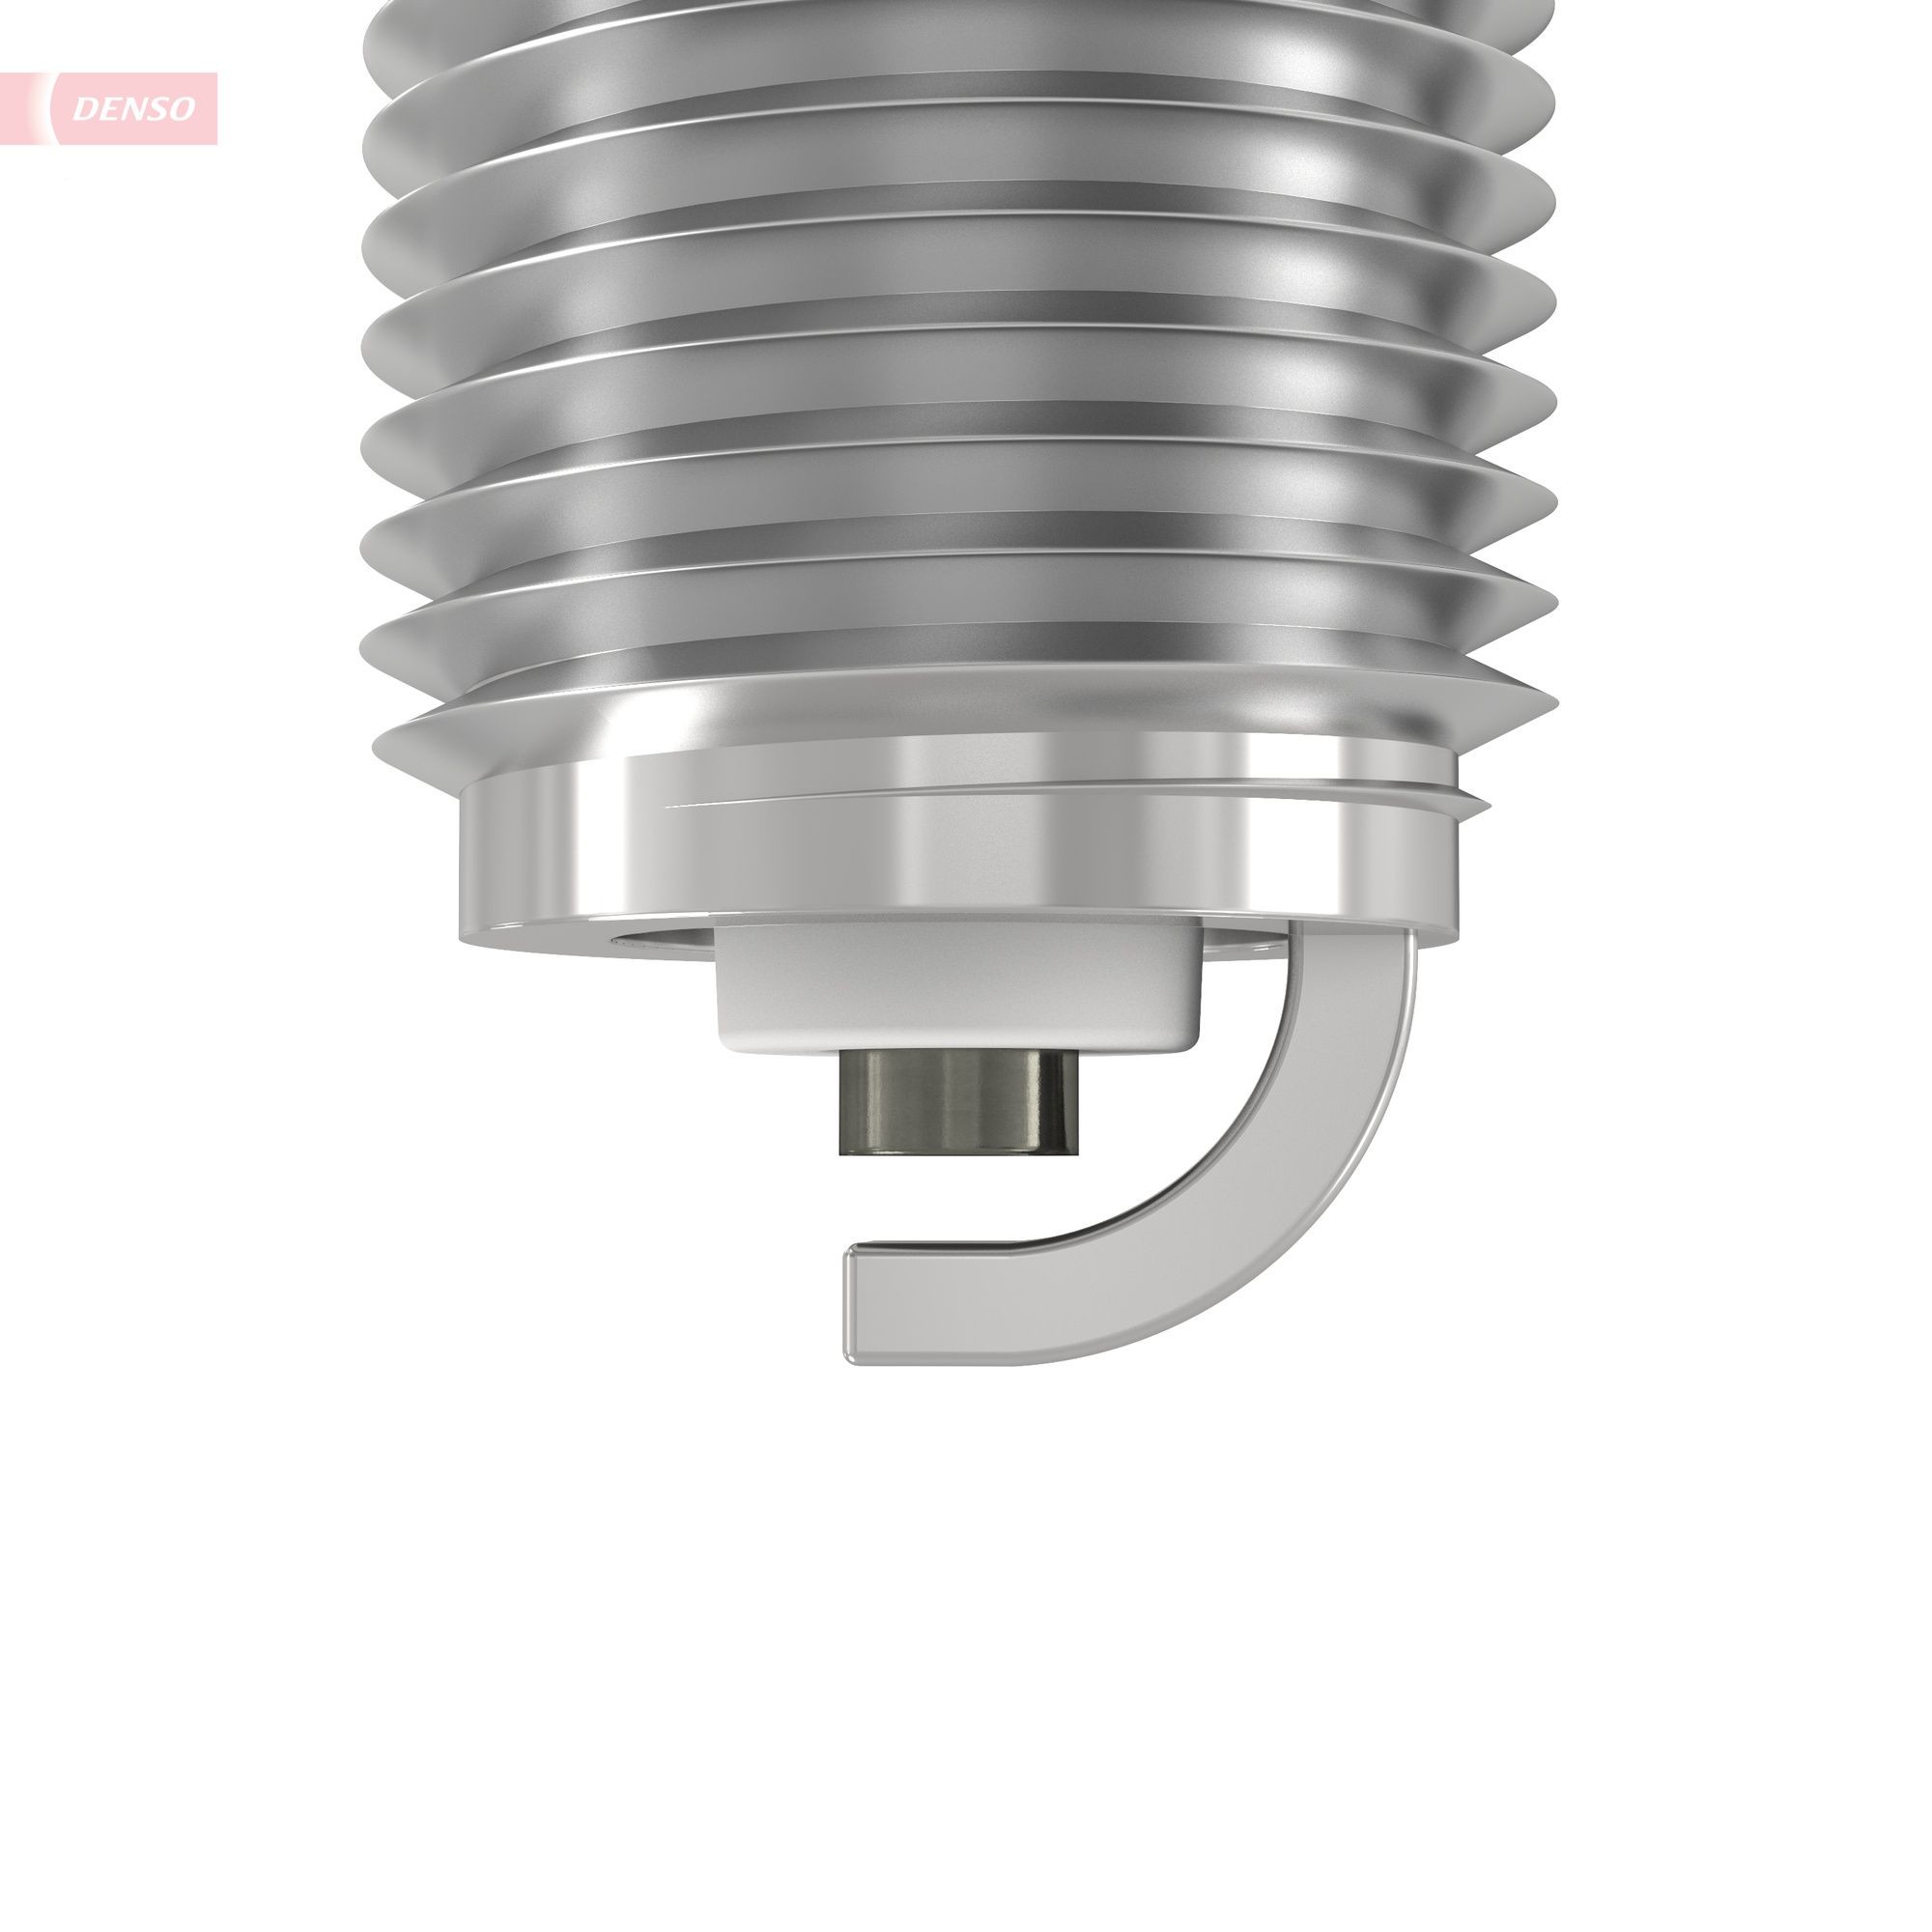 4194 DENSO Nickel Spanner Size: 18 Engine spark plug X31ESR-U buy